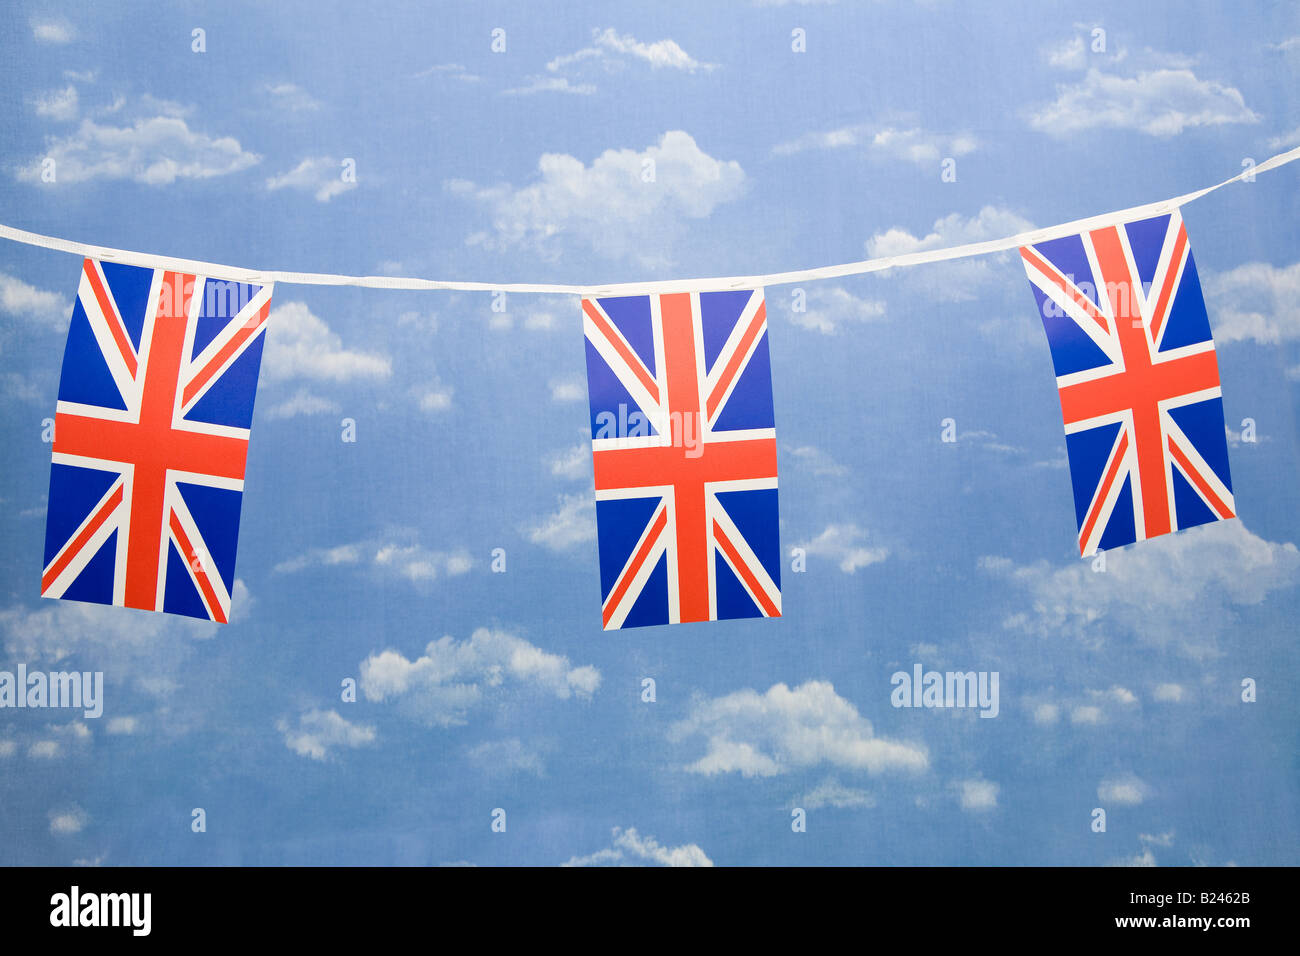 British flags Stock Photo